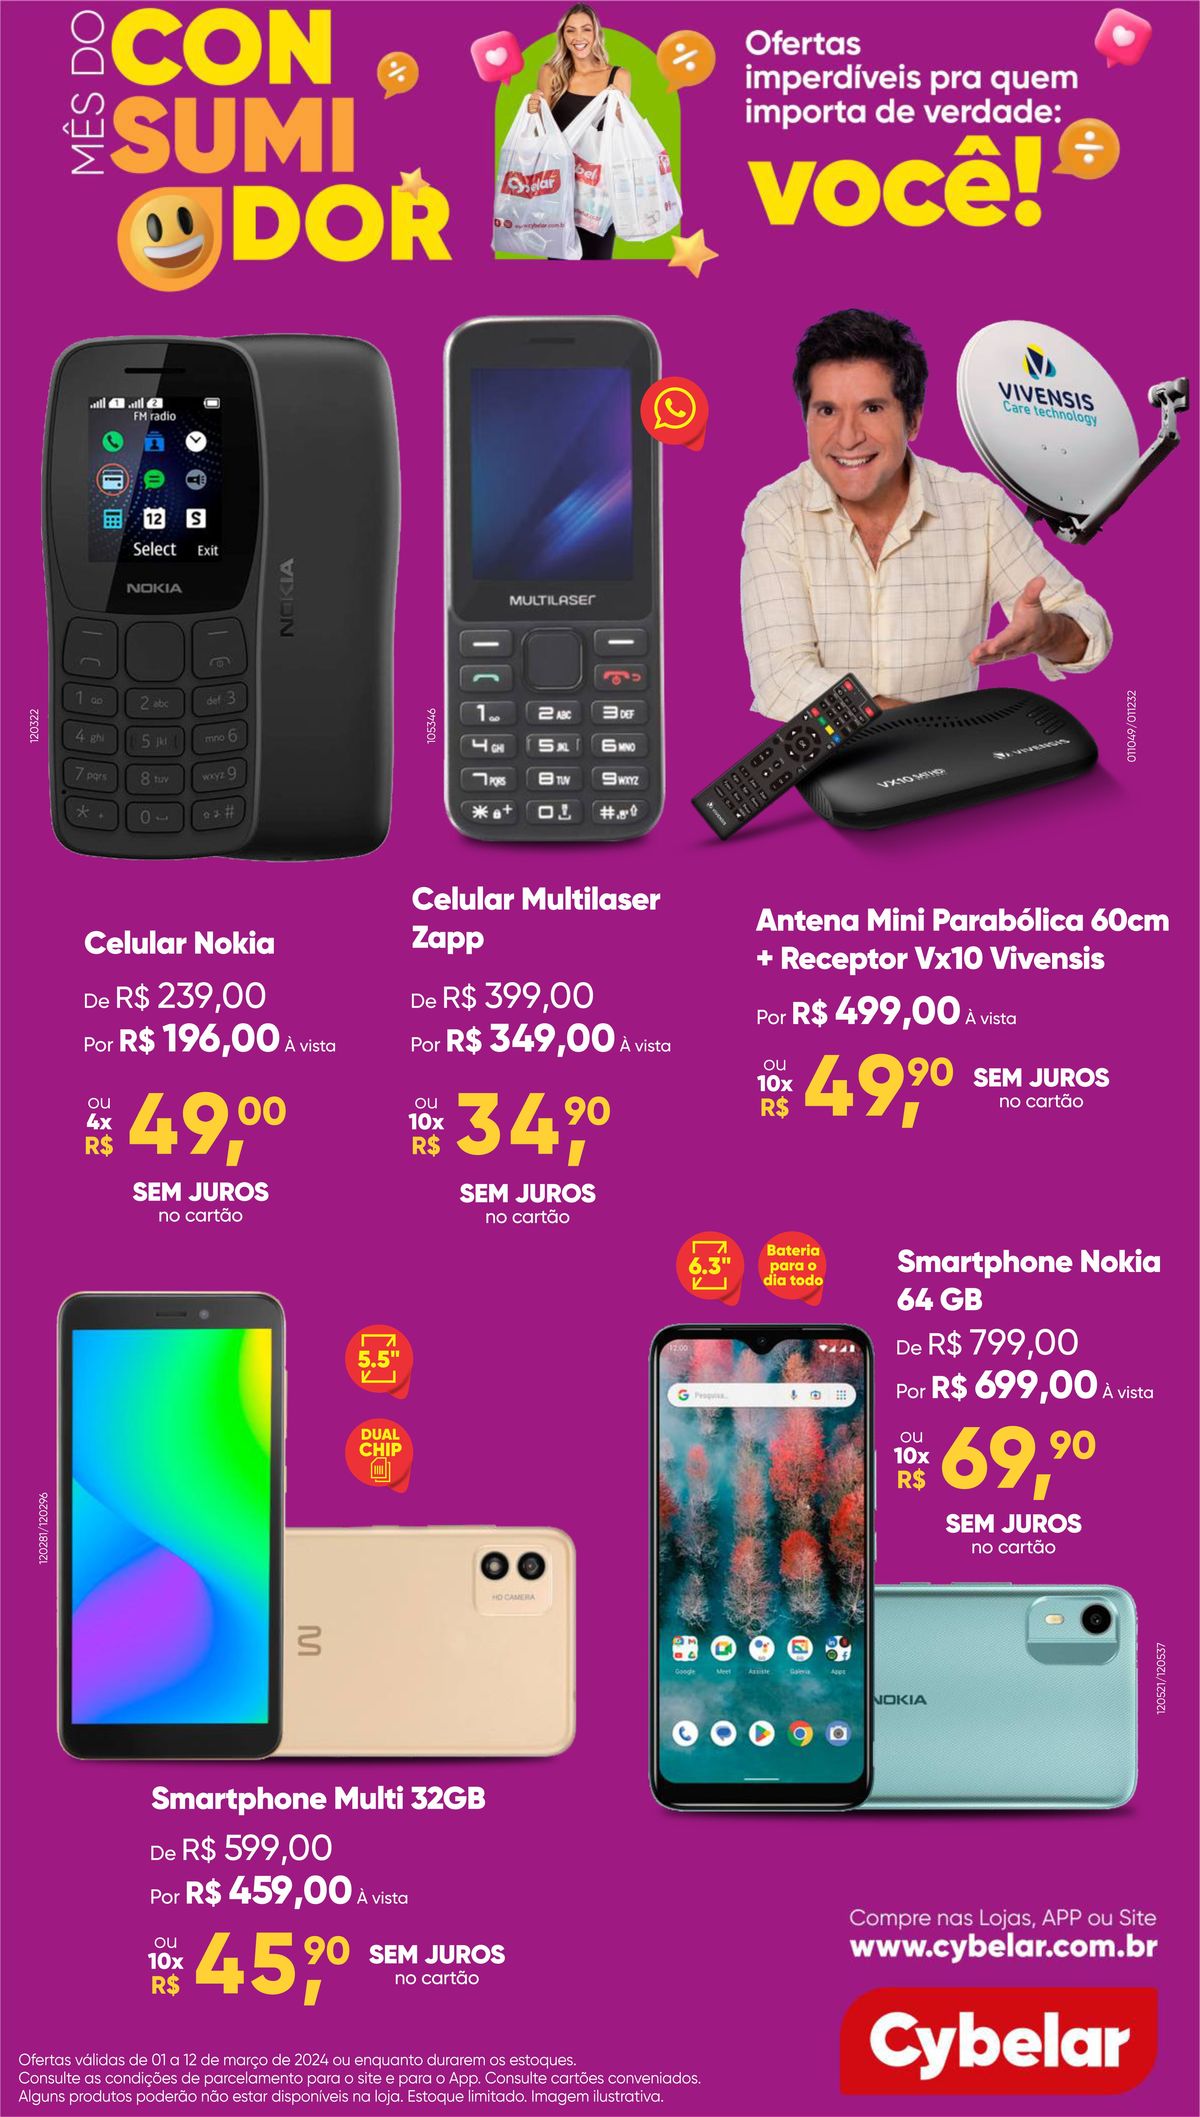 Ofertas em smartphones Nokia e Multi 32GB